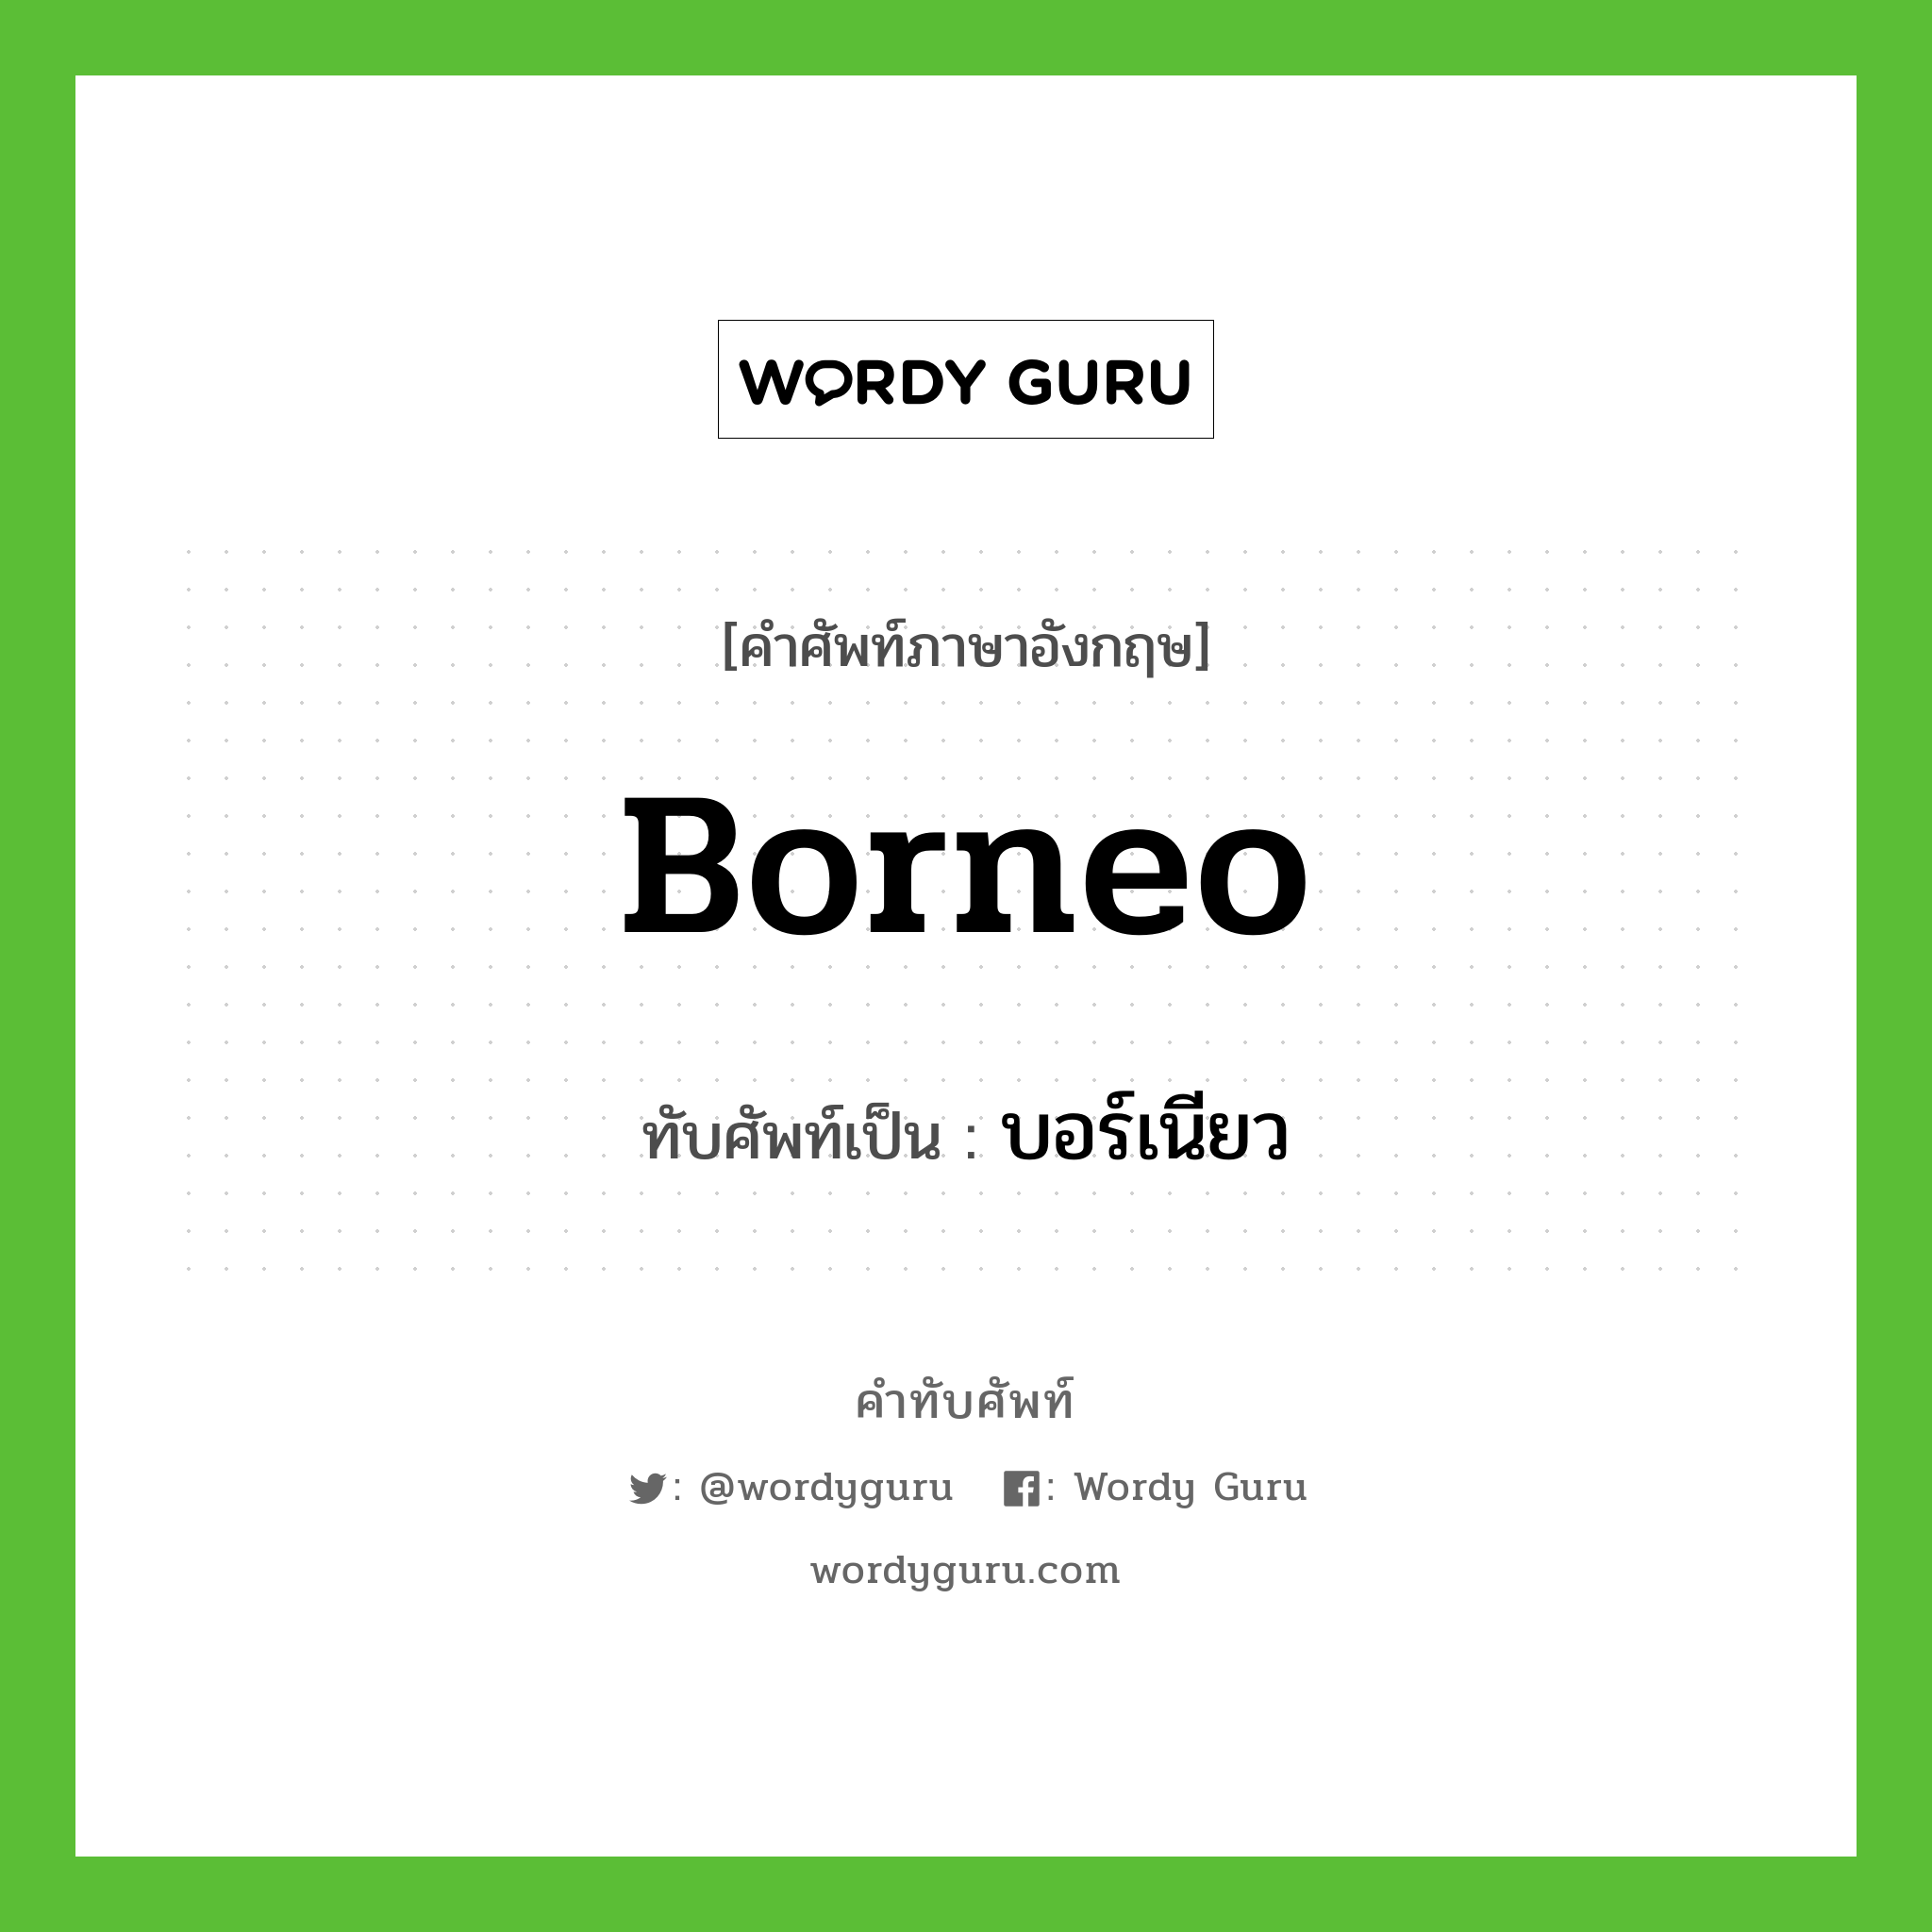 บอร์เนียว เขียนอย่างไร?, คำศัพท์ภาษาอังกฤษ บอร์เนียว ทับศัพท์เป็น Borneo